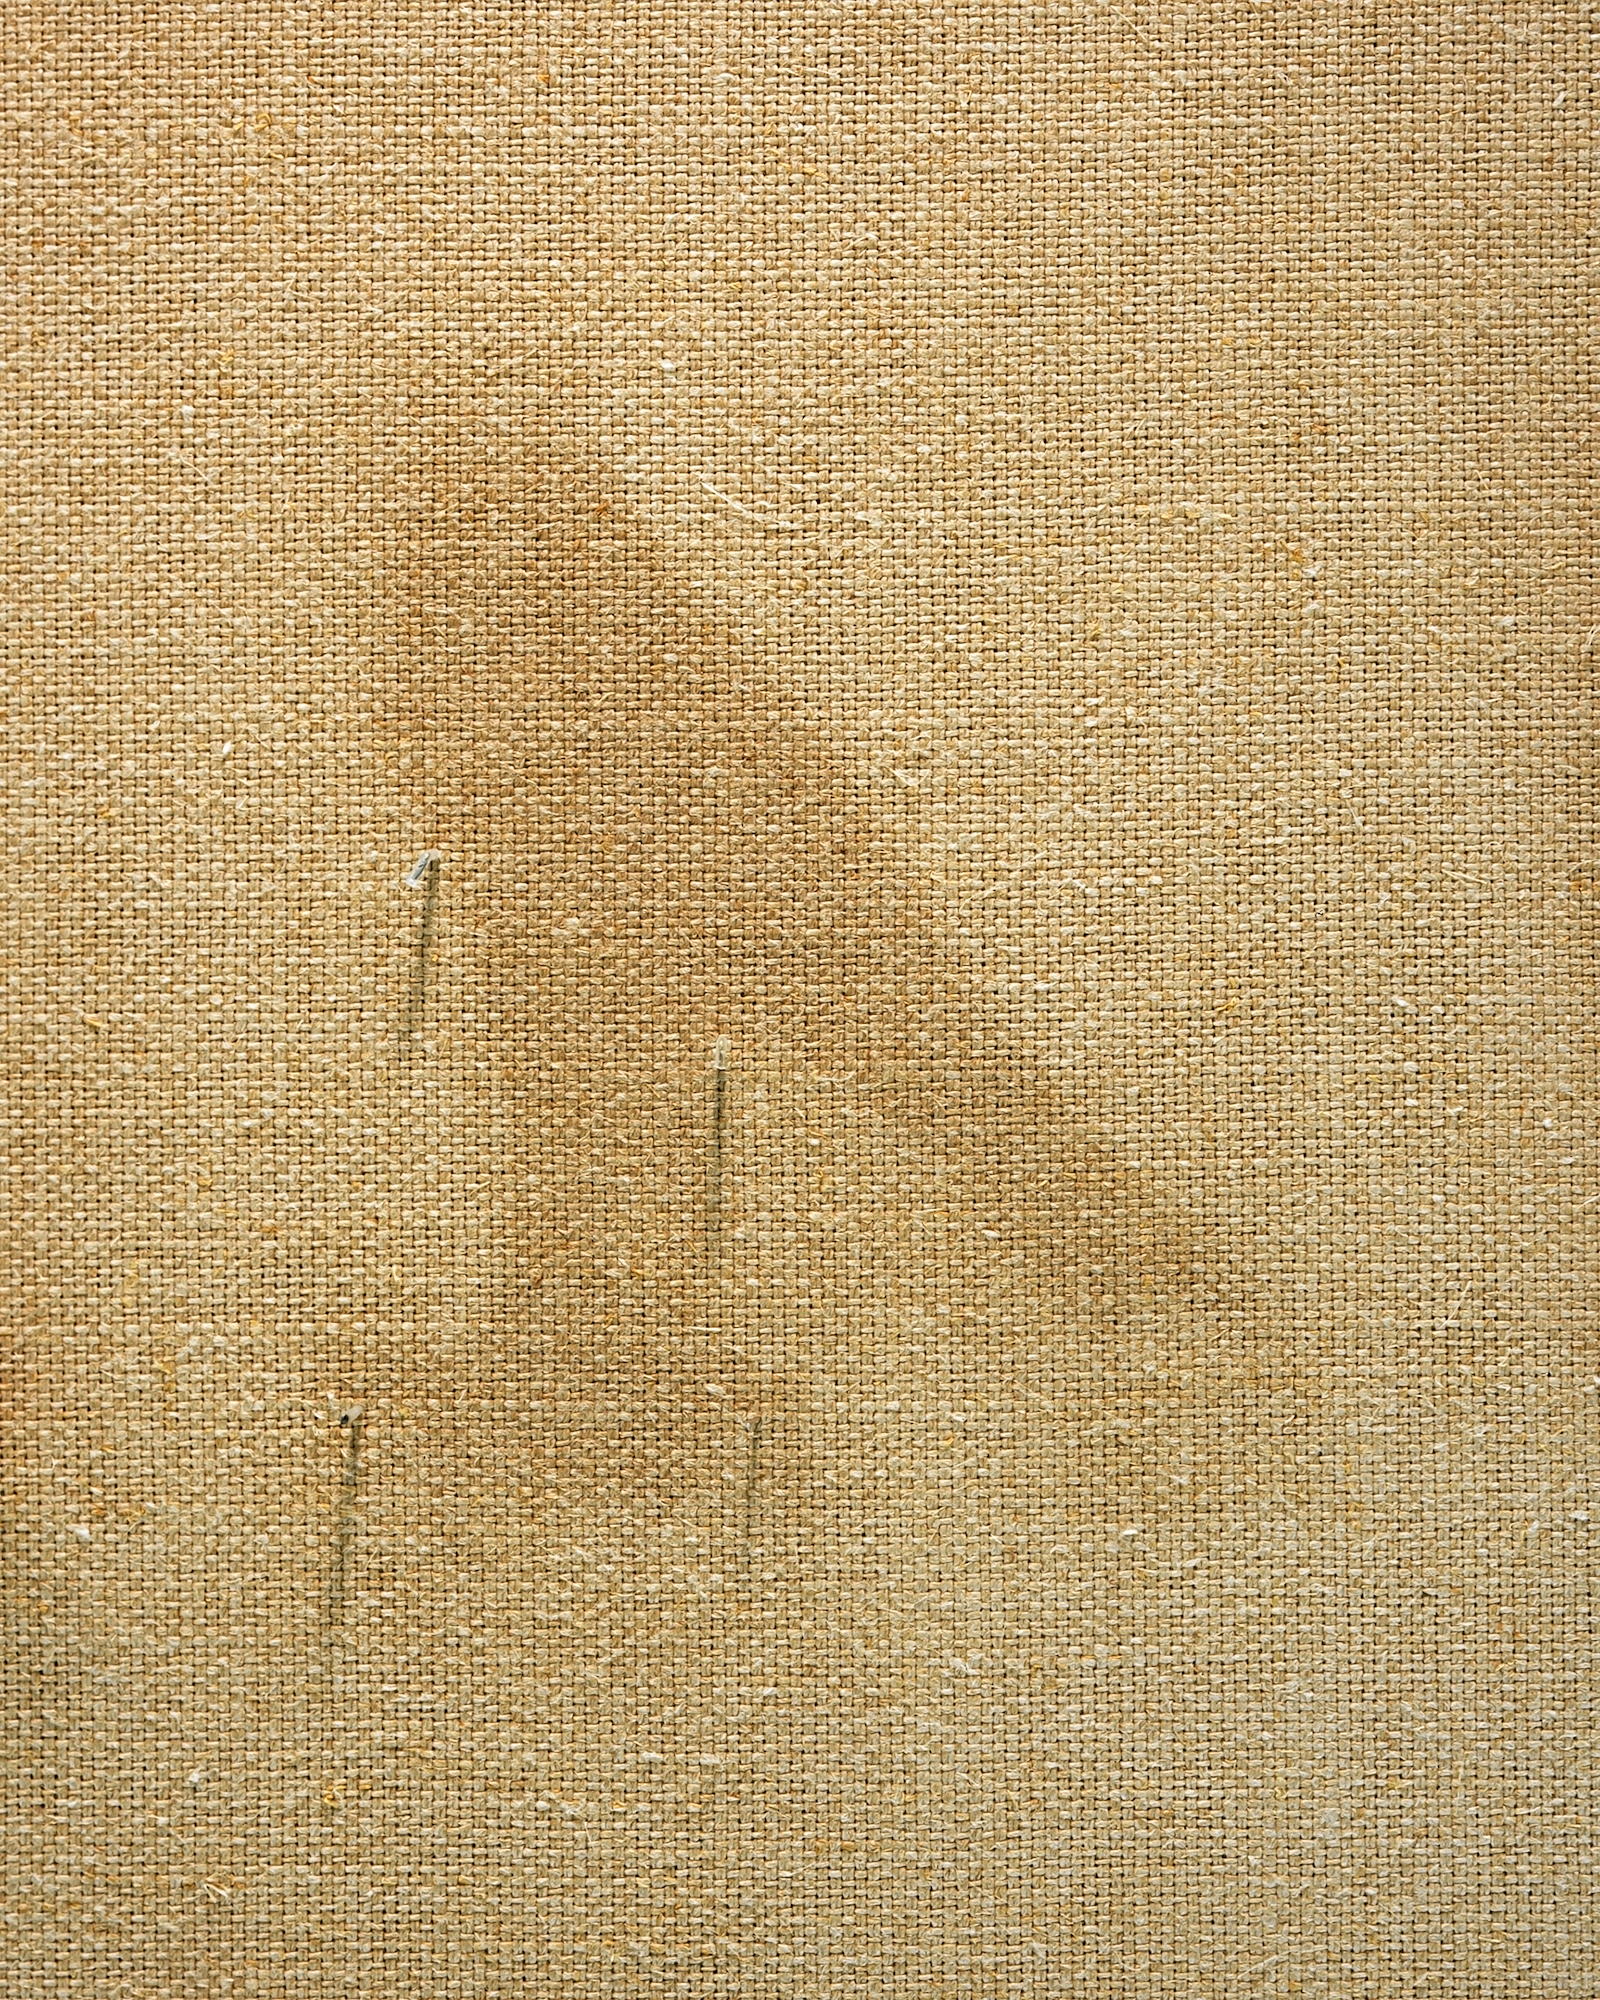   The Metropolitan Museum of Art-4, &nbsp;archival pigment print,&nbsp;14 x 11 inches, 2013 